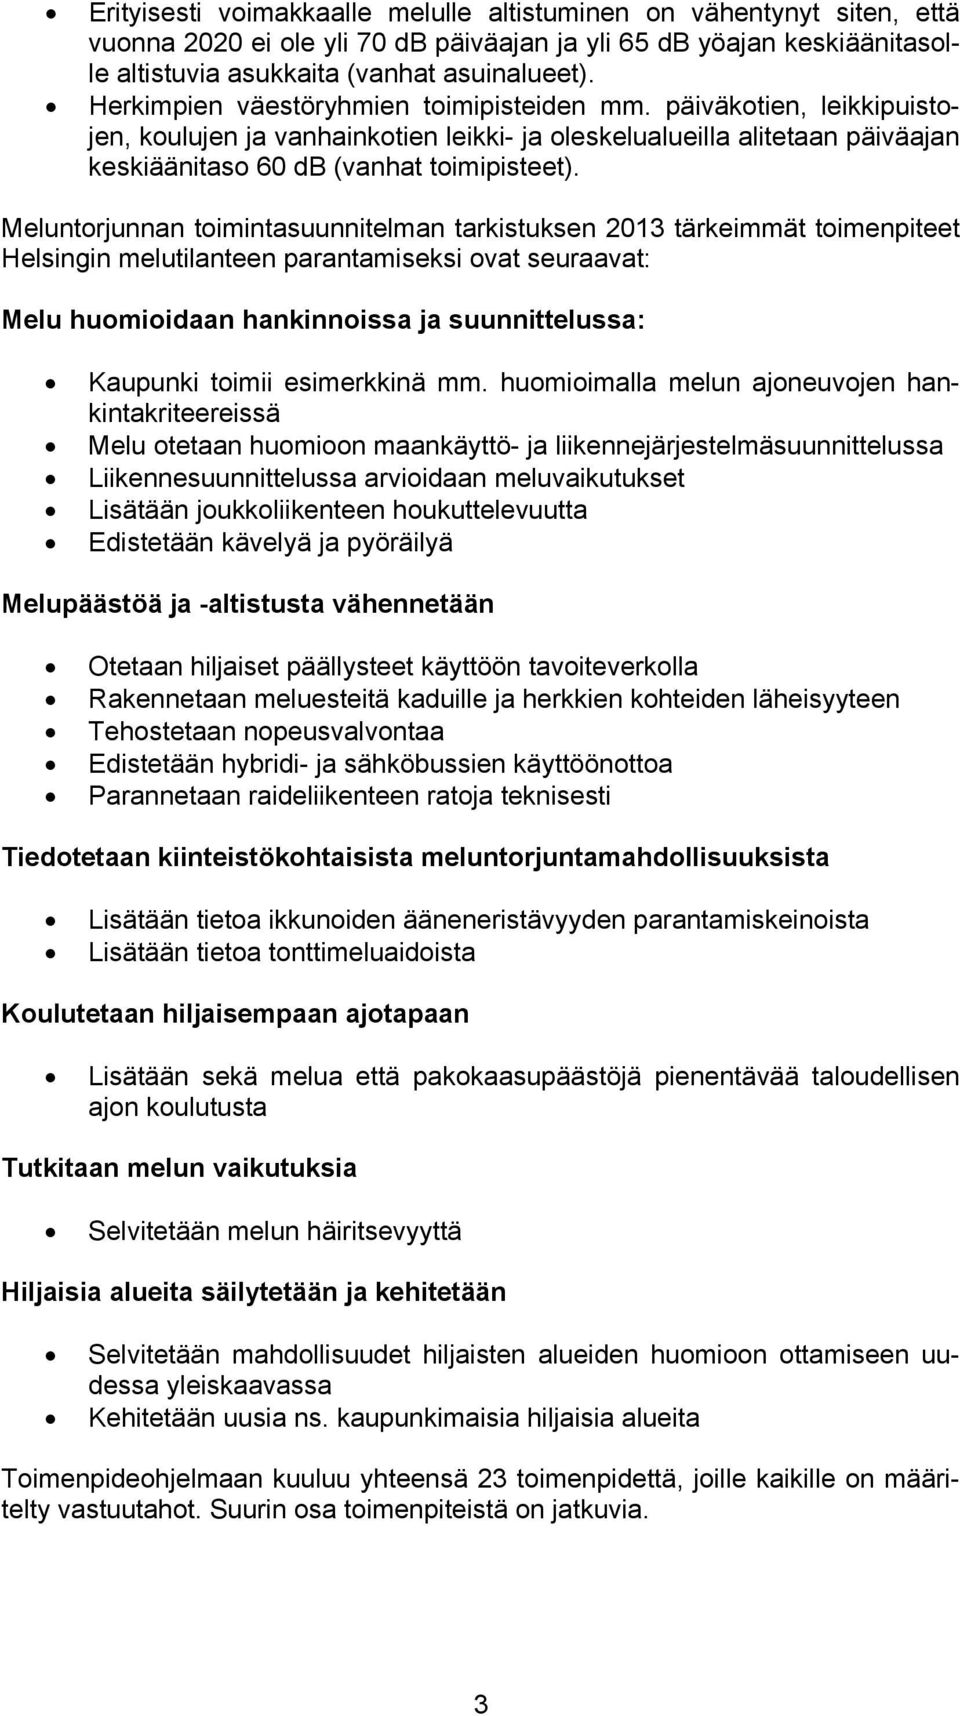 Meluntorjunnan toimintasuunnitelman tarkistuksen 2013 tärkeimmät toimenpiteet Helsingin melutilanteen parantamiseksi ovat seuraavat: Melu huomioidaan hankinnoissa ja suunnittelussa: Kaupunki toimii